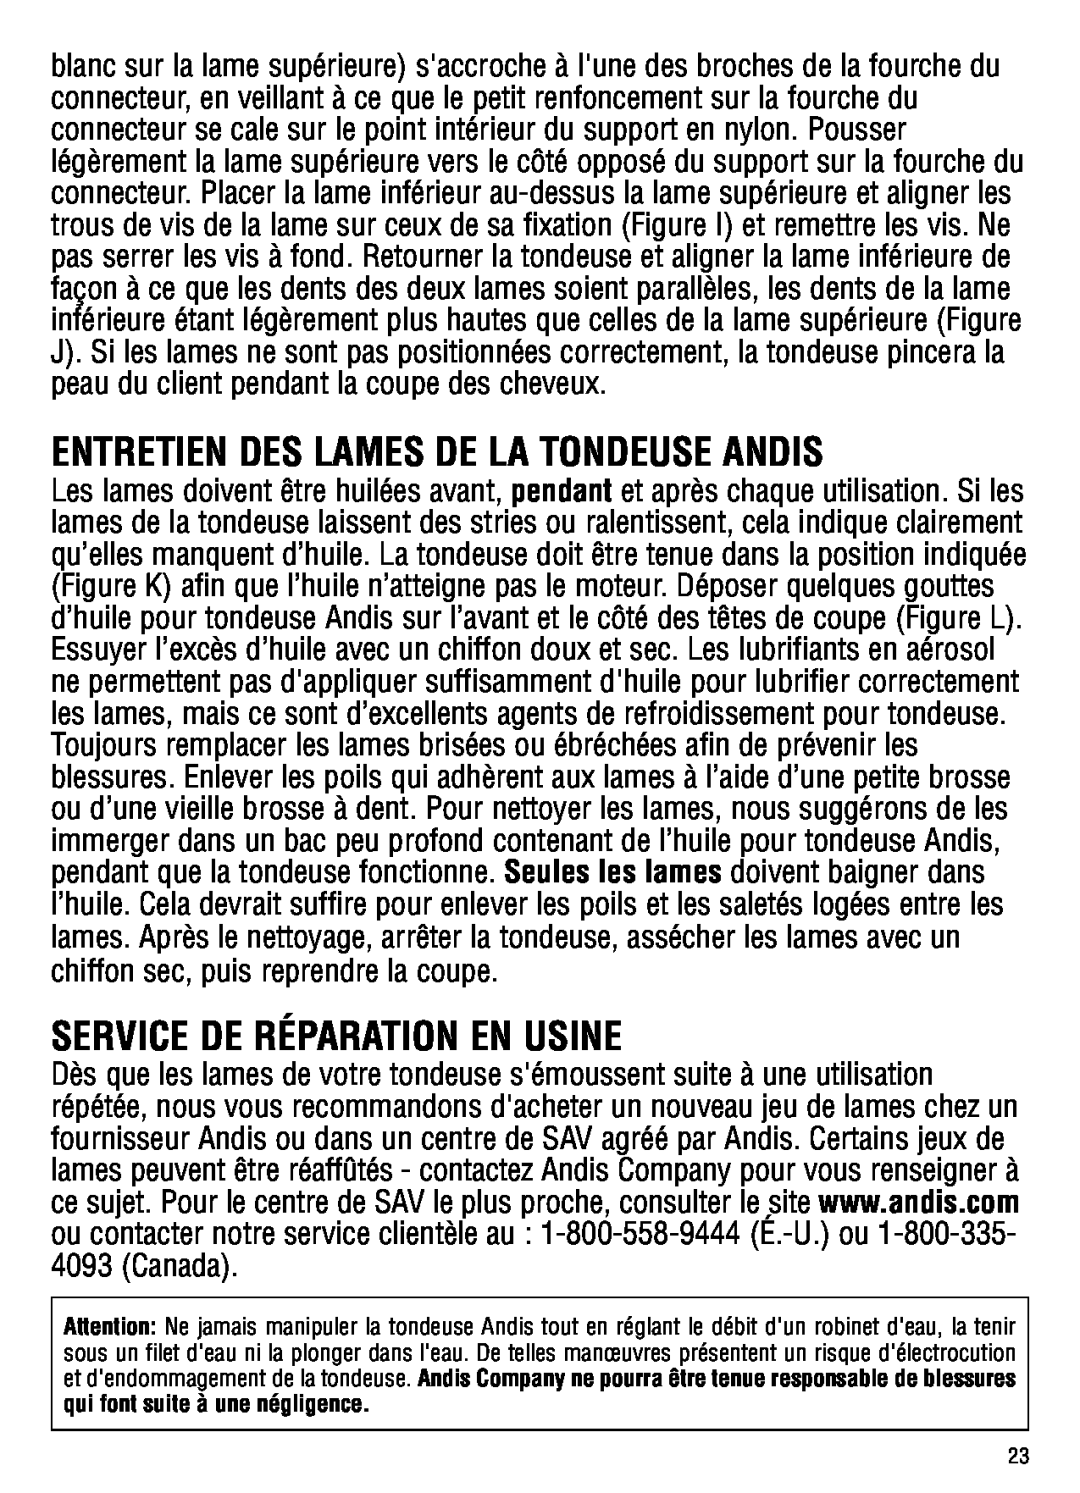 Andis Company GC Entretien Des Lames De La Tondeuse Andis, Service De Réparation En Usine, qui font suite à une négligence 